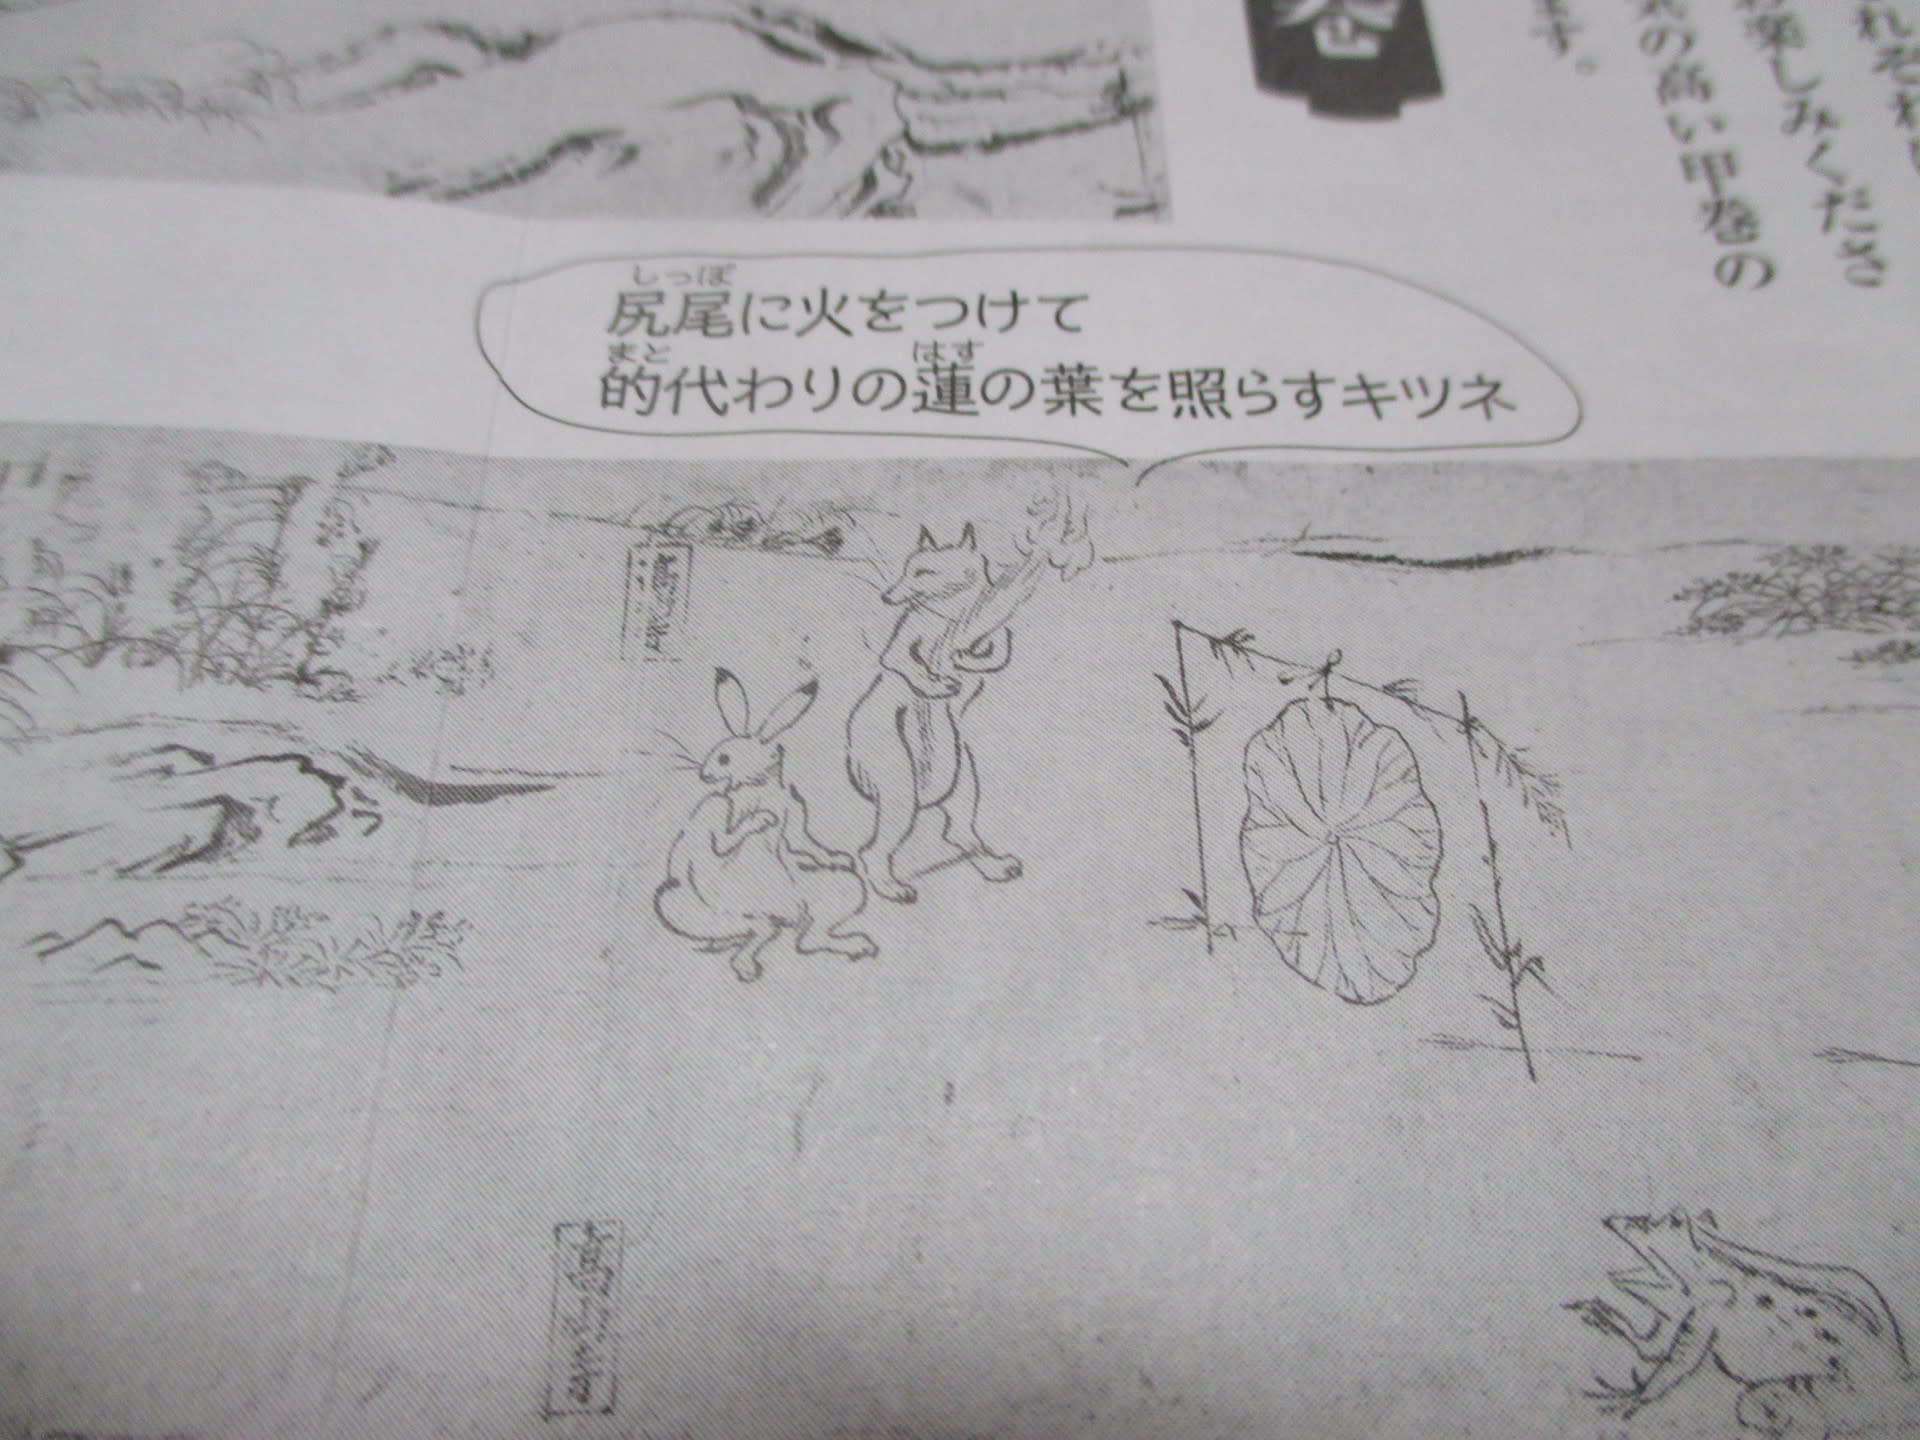 鳥獣戯画展のチラシ 奈良 佛教大学通信 奈良 奈良 いつもは京都